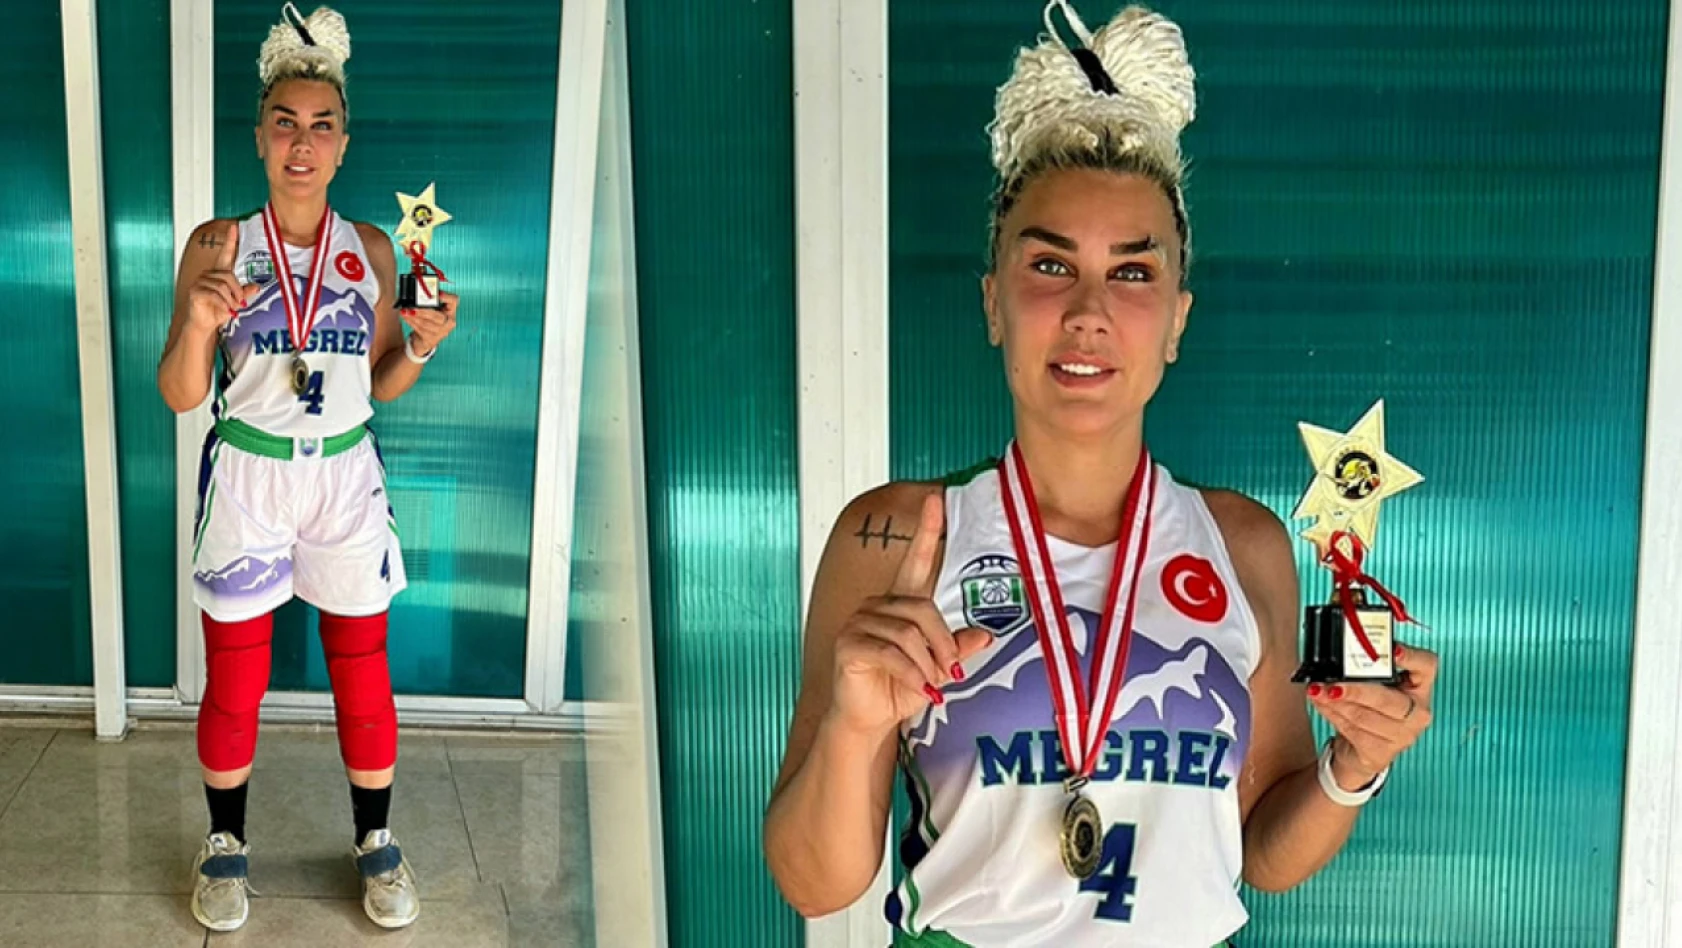 Kemer Basketbol Turnuvası'nın en değerli oyuncusu Banu Karadağlı